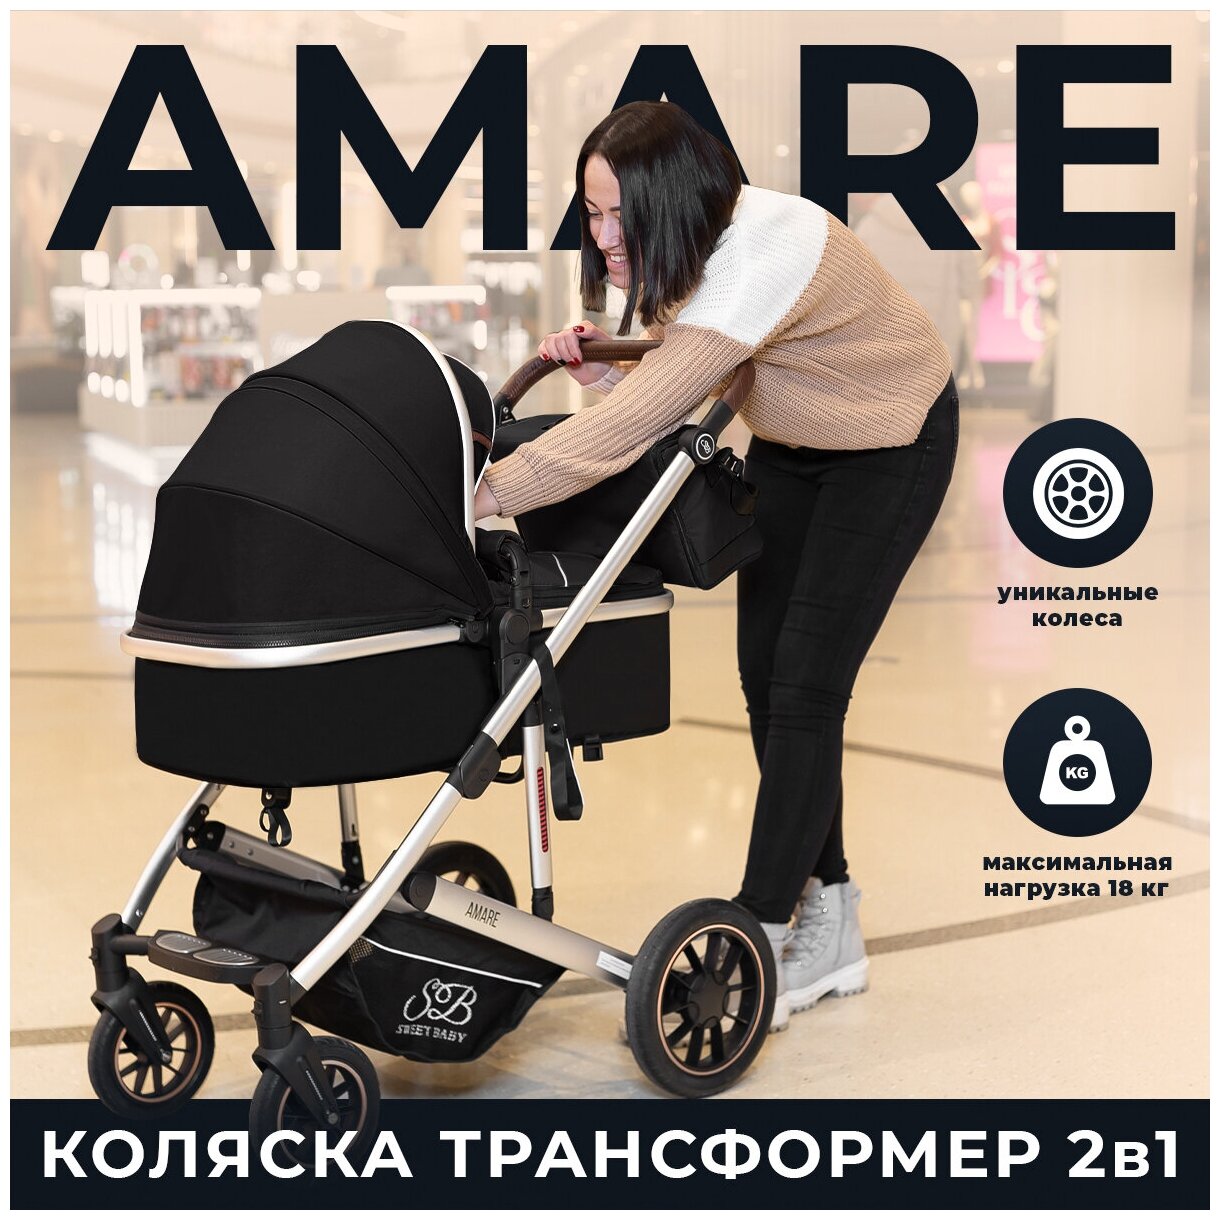 Коляска-трансформер Sweet Baby Amare Black — купить в интернет-магазине по низкой цене на Яндекс Маркете